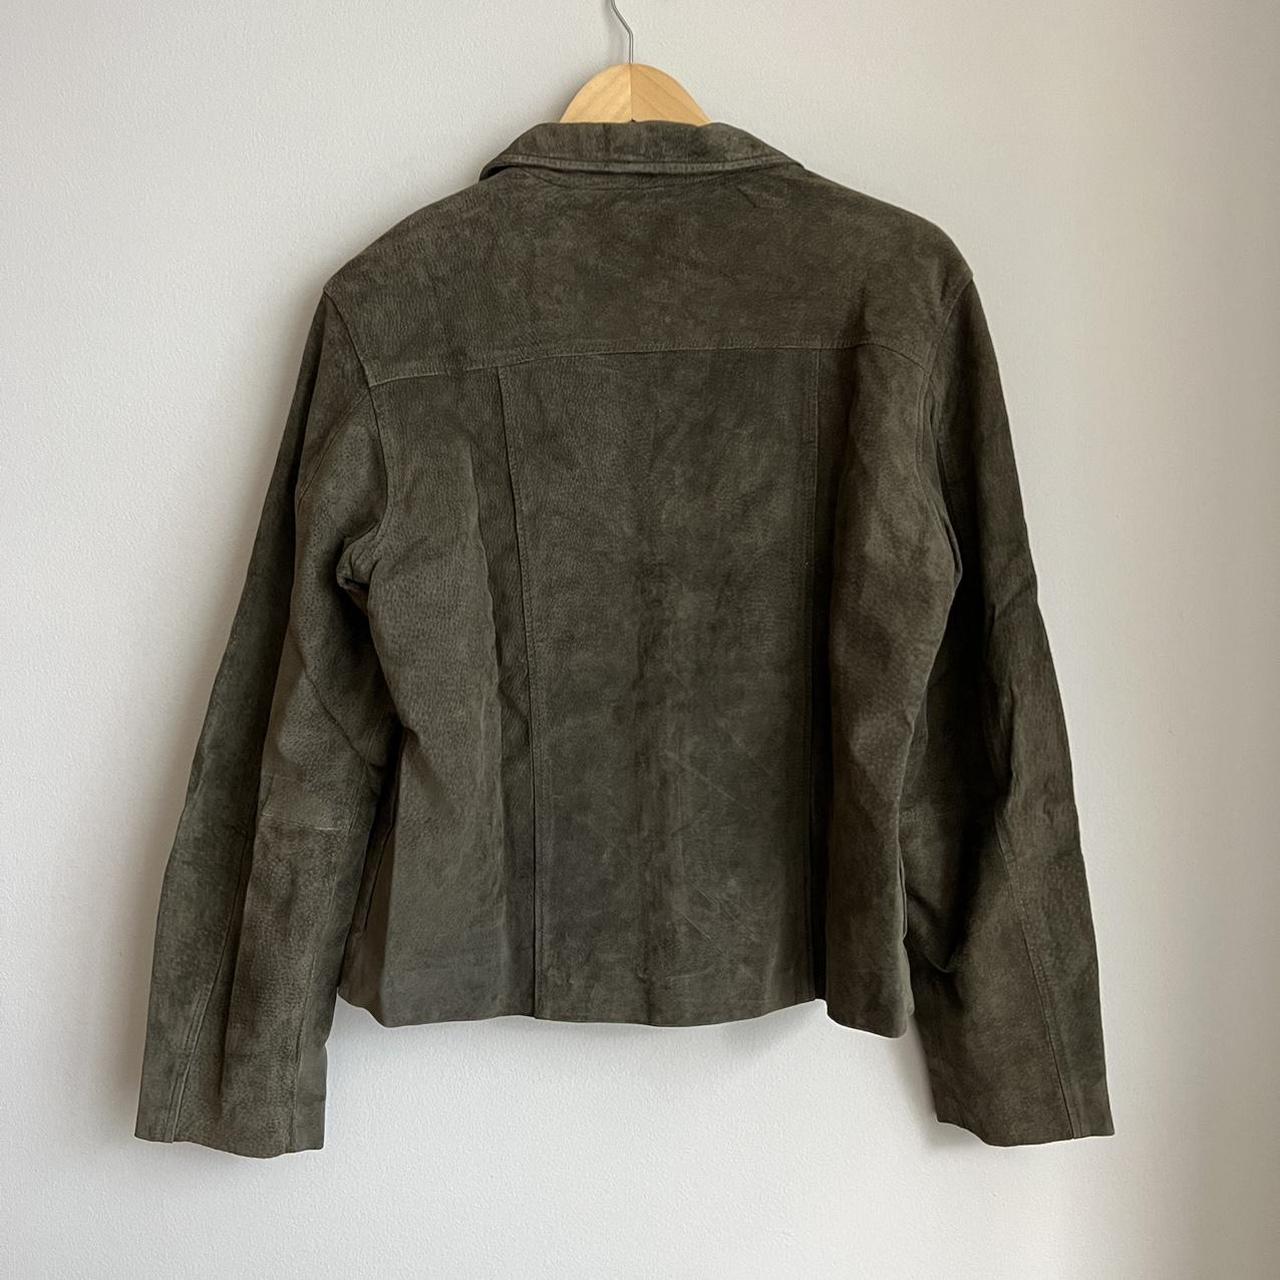 Olive green suede leather jacket. Size large, fits... - Depop